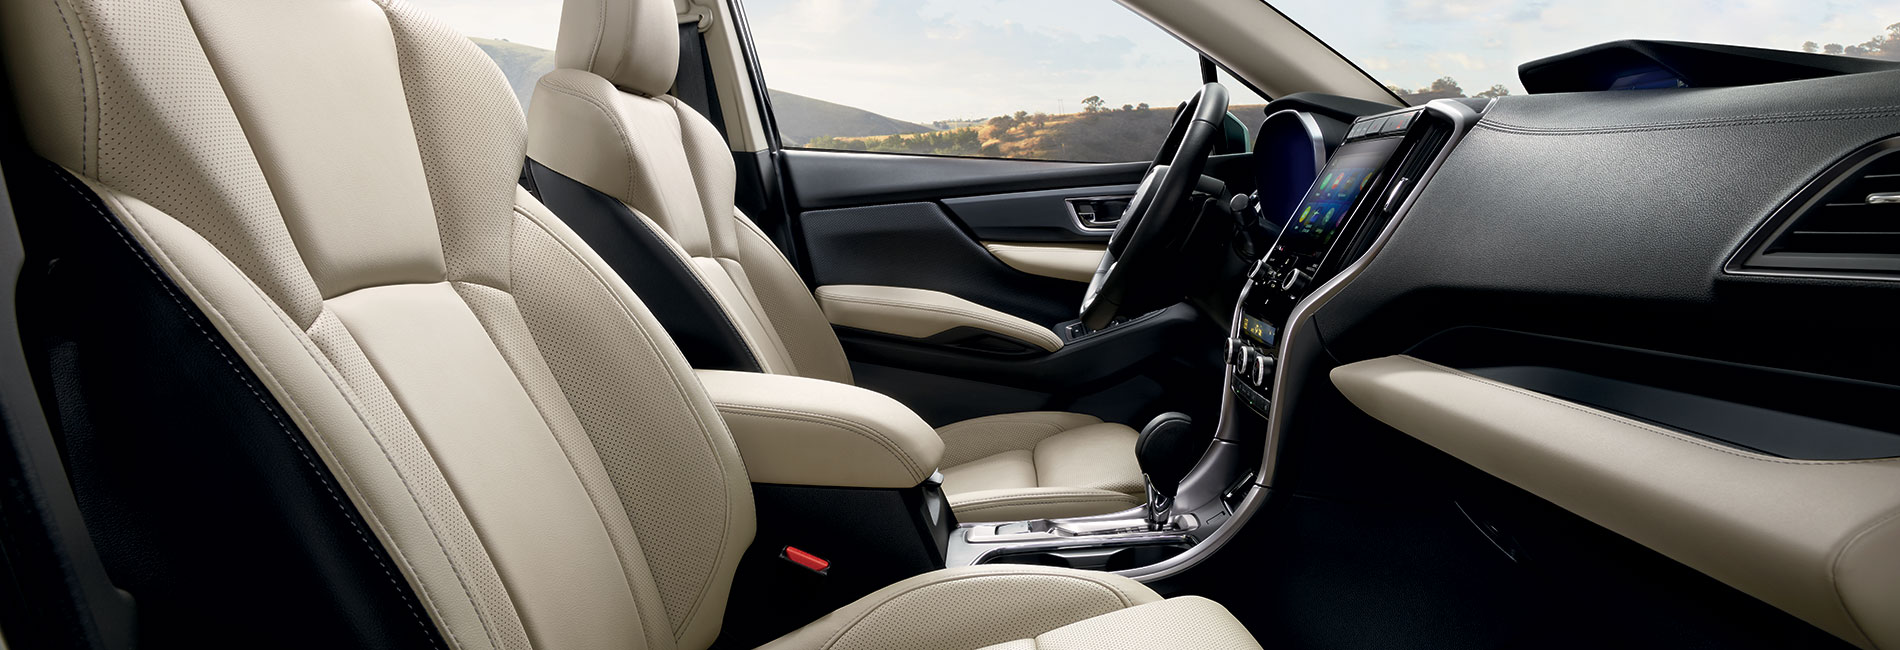 2020 Subaru Ascent Interior Features